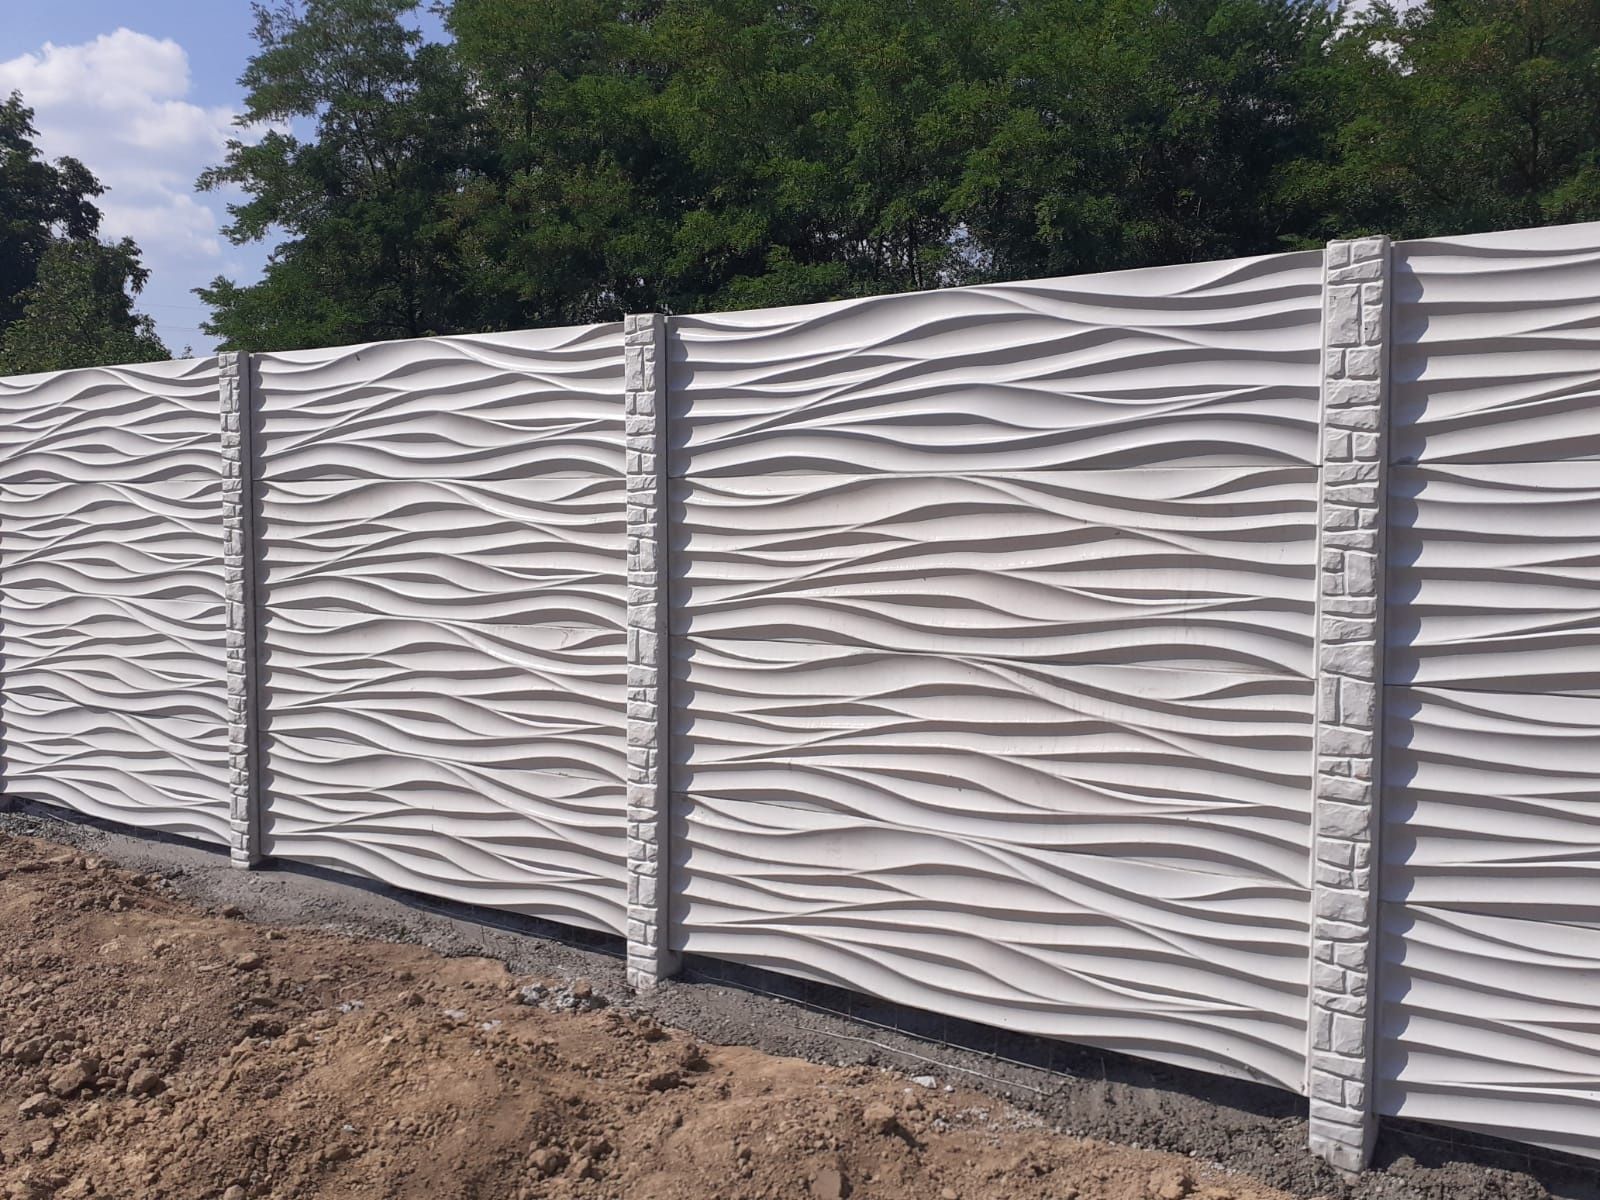 Gard beton garduri placi beton montaj București Dâmbovița Arge Prahova